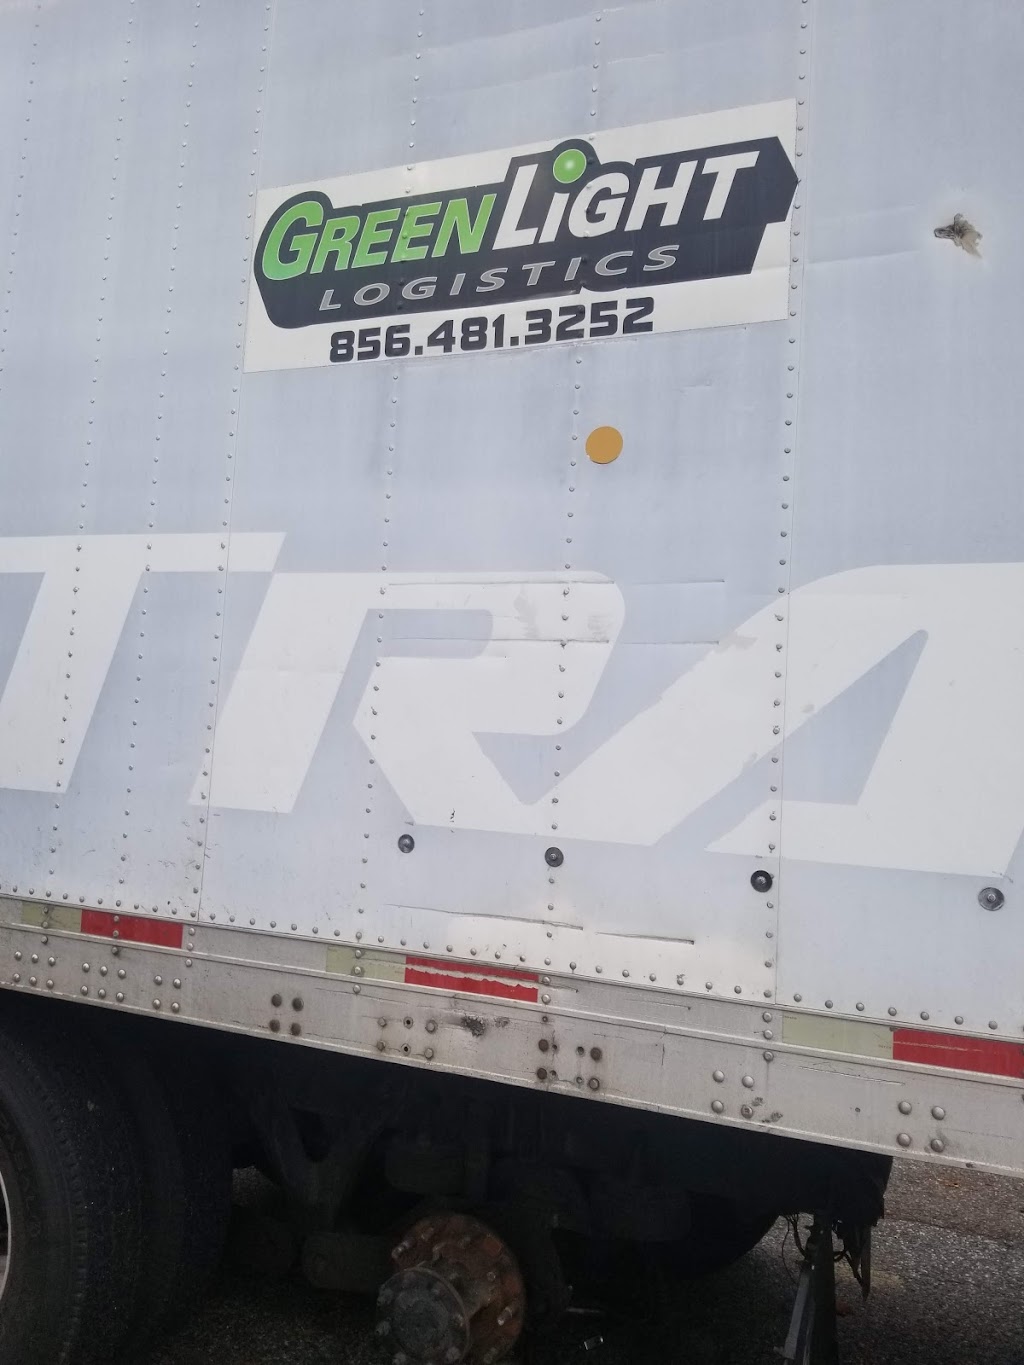 Greenlight Logistics | Berlin New Freedom Rd, Berlin, NJ 08009 | Phone: (856) 481-3252